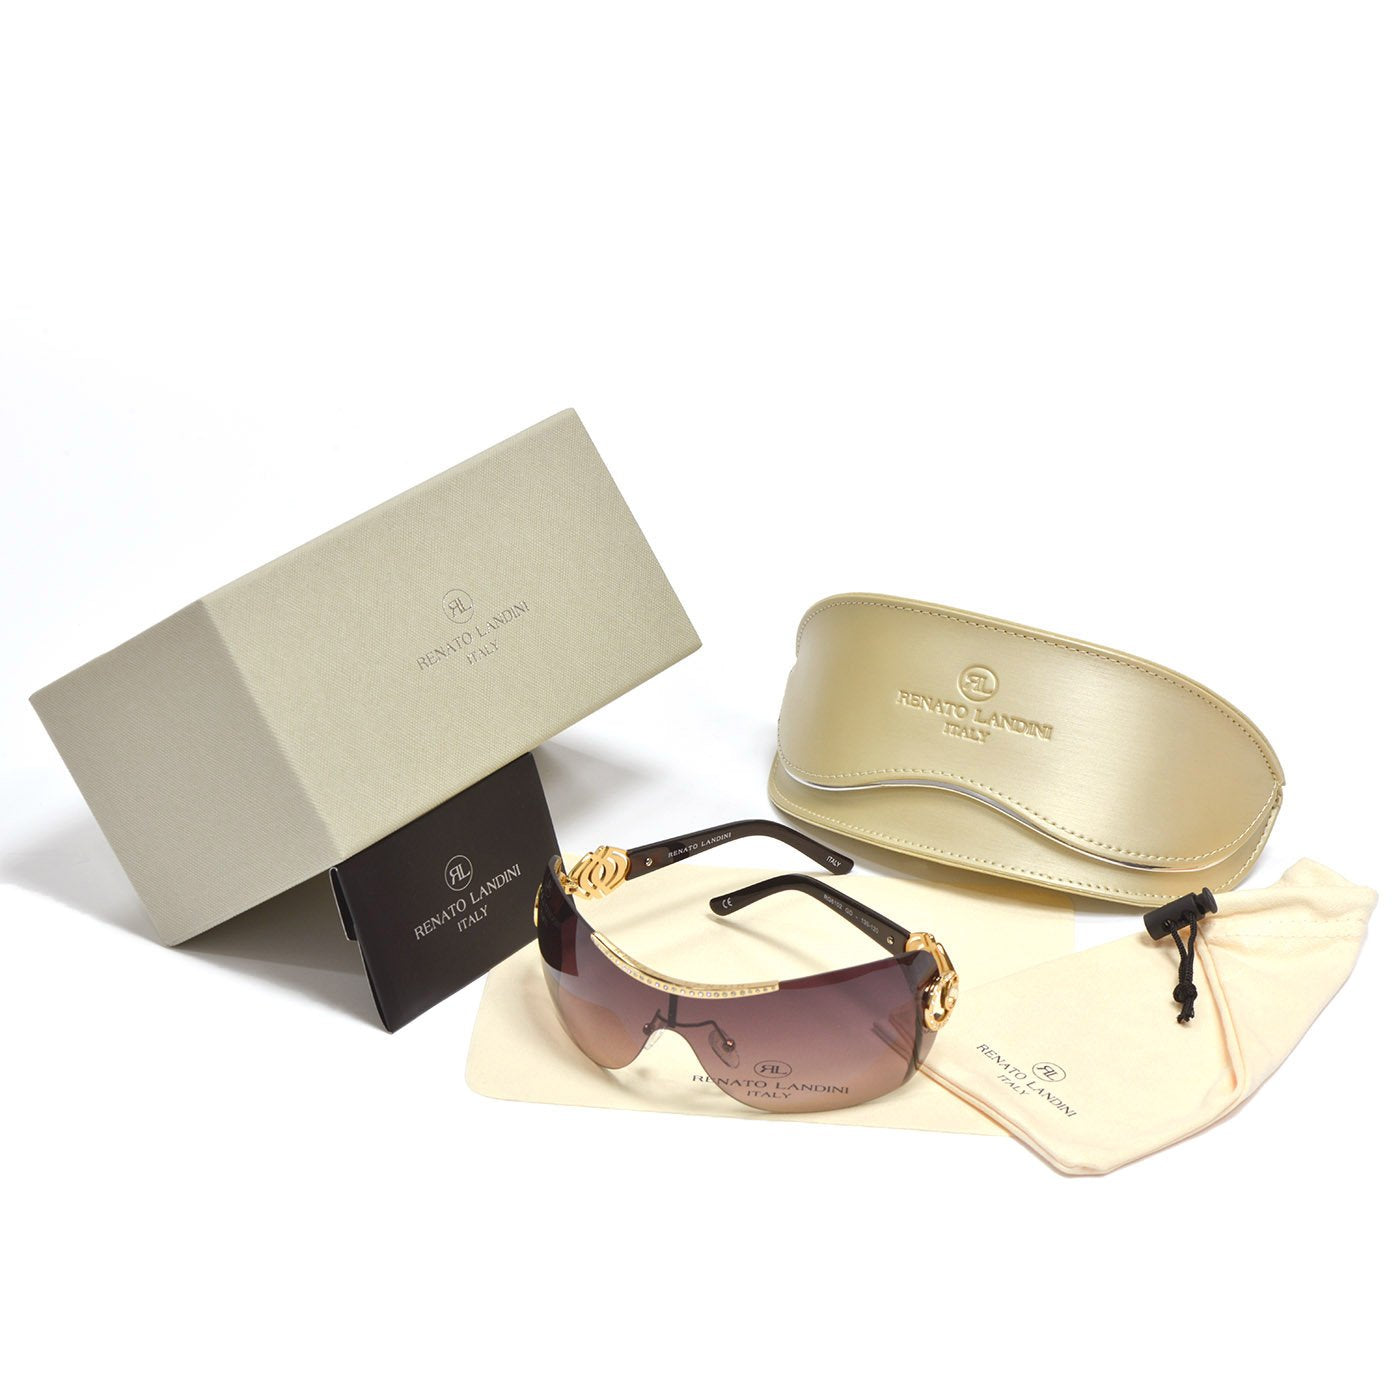 RENATO LANDINI Women's Sunglasses Gold & Brown with Stones/ Allure